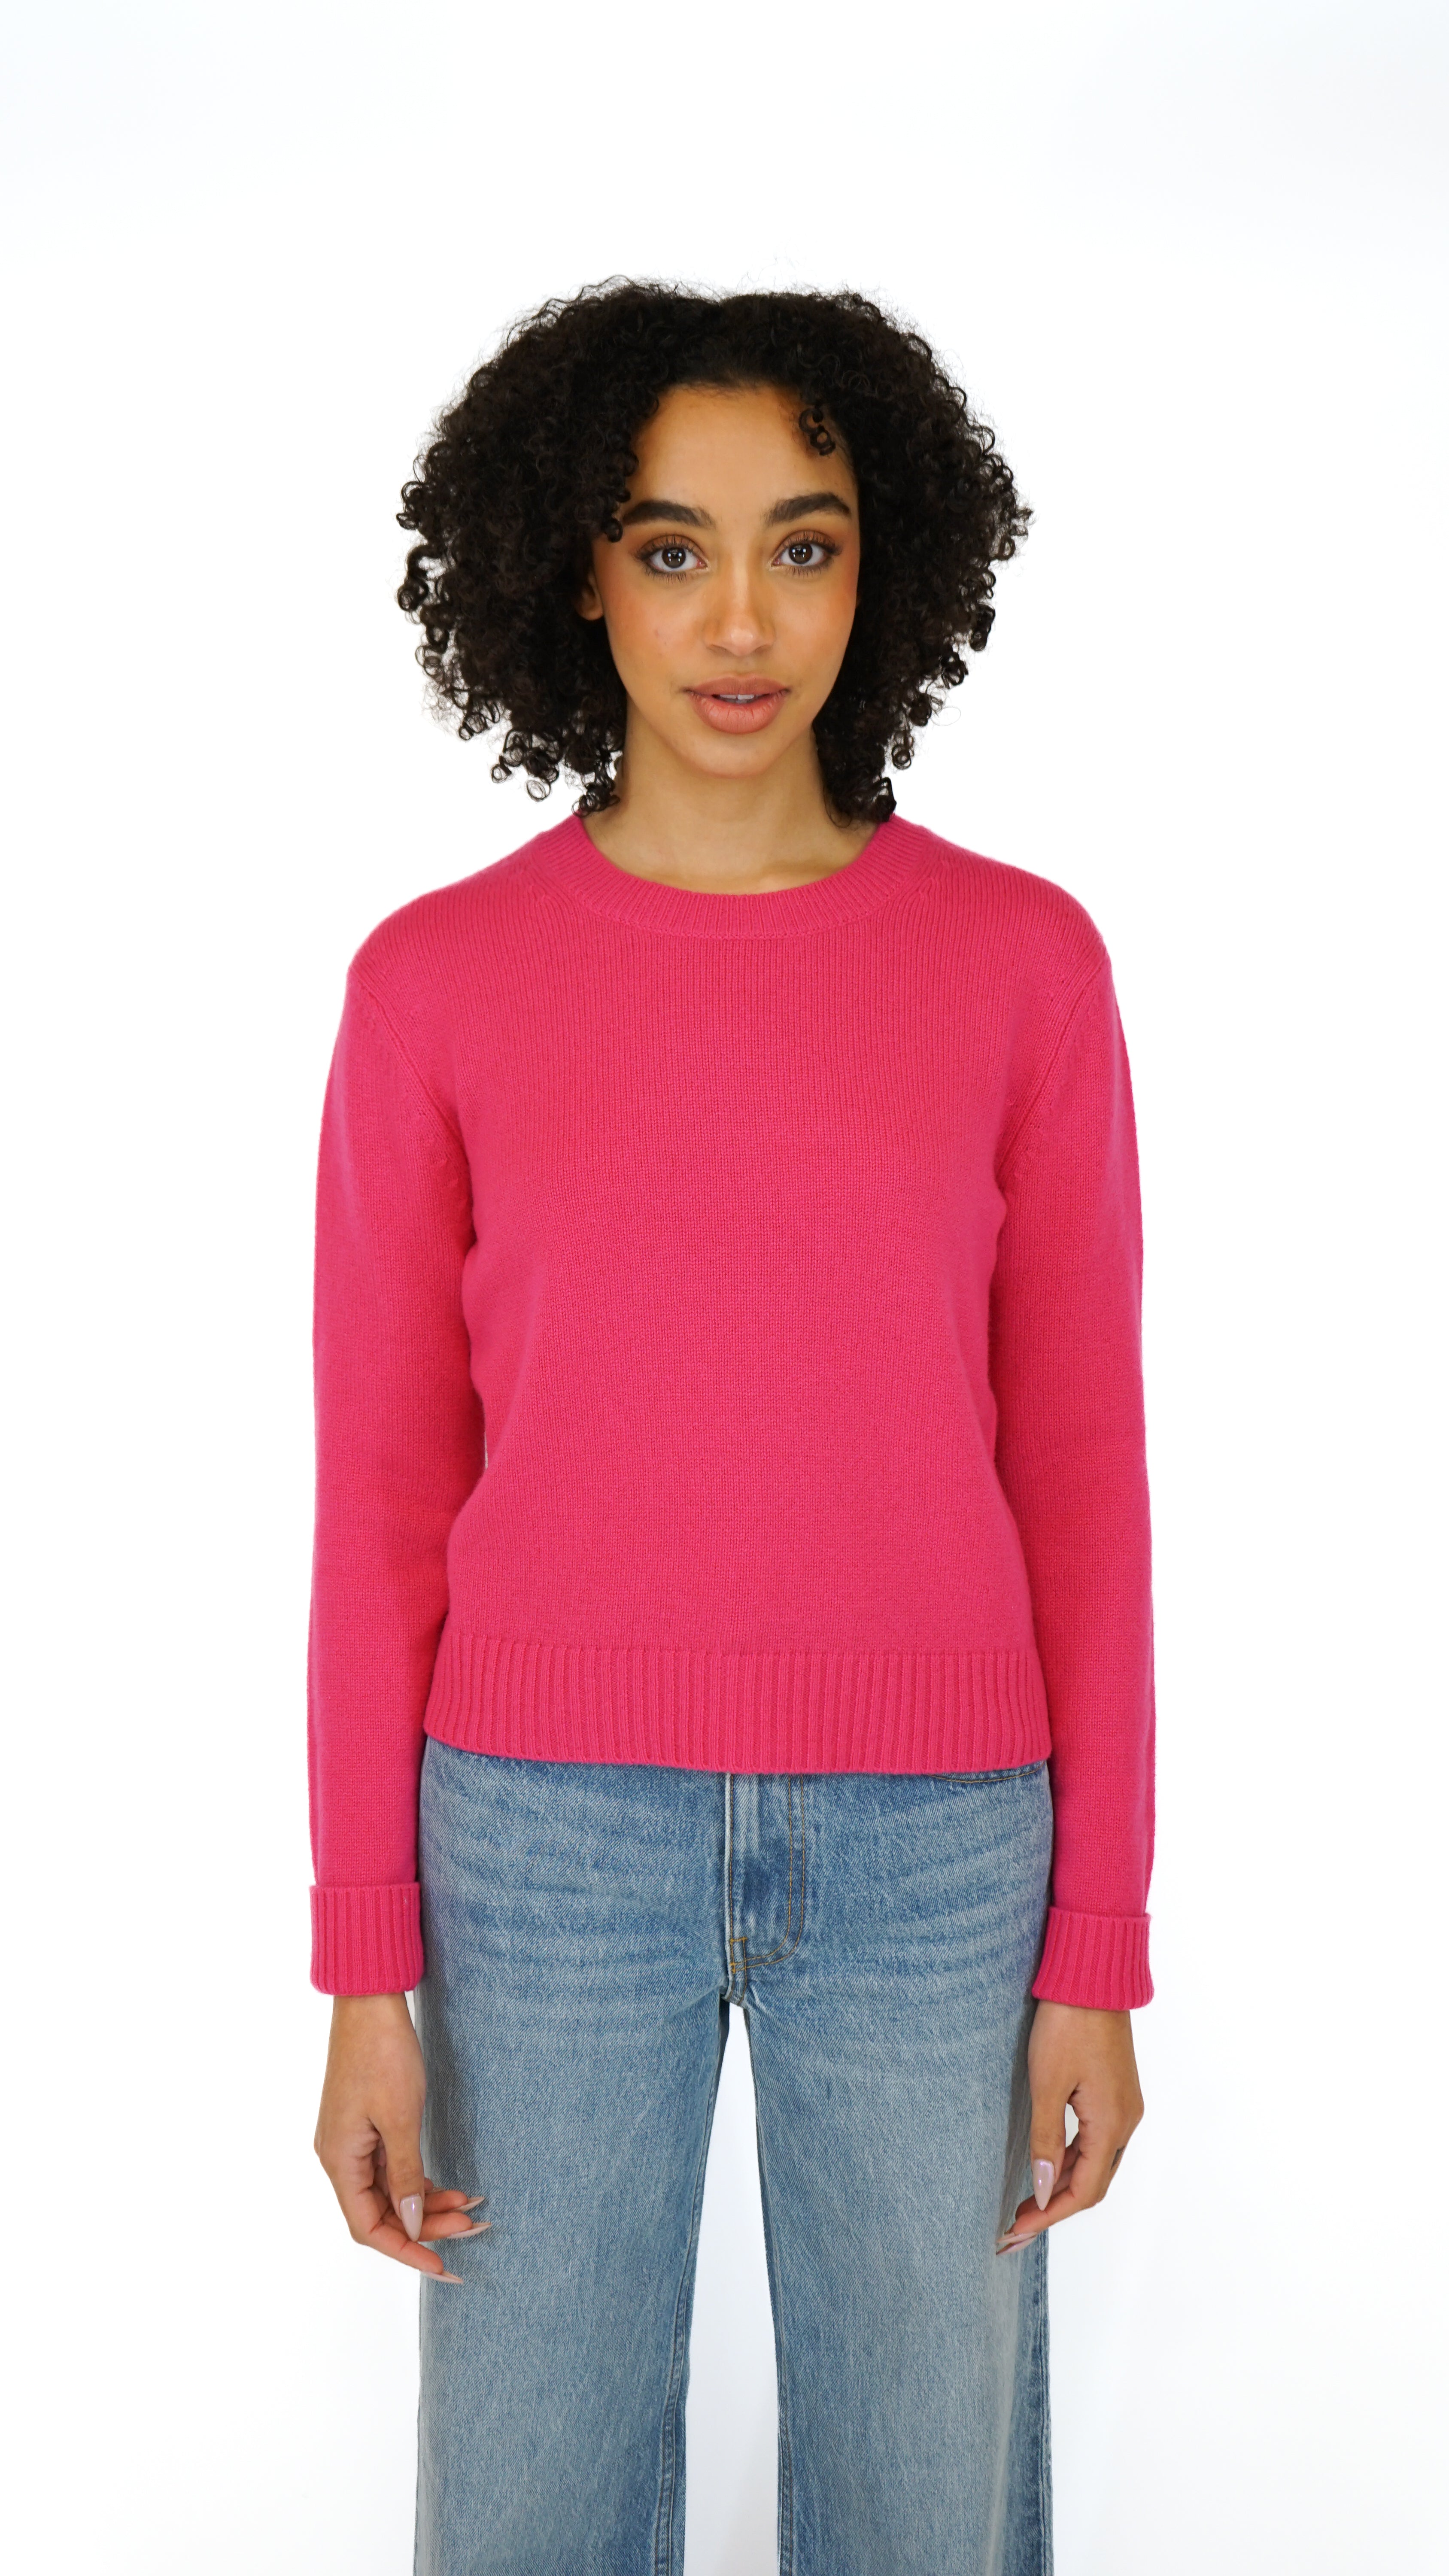 The Lisa Yang Mable Crewneck Sweater